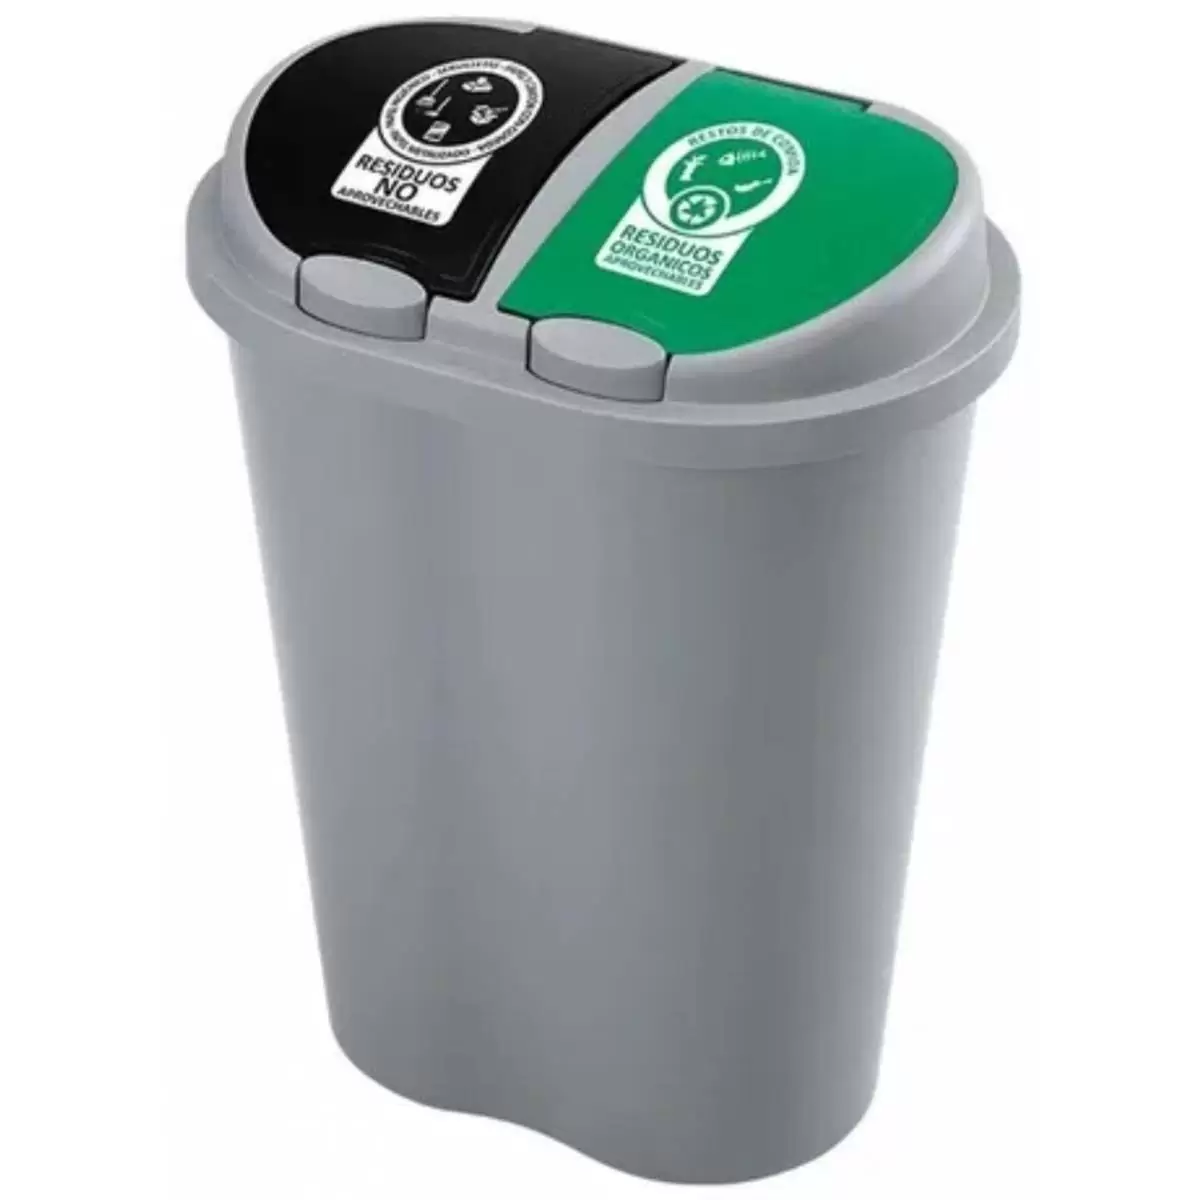 Cubo reciclaje armario, Contenedor basura doble, Separador basura